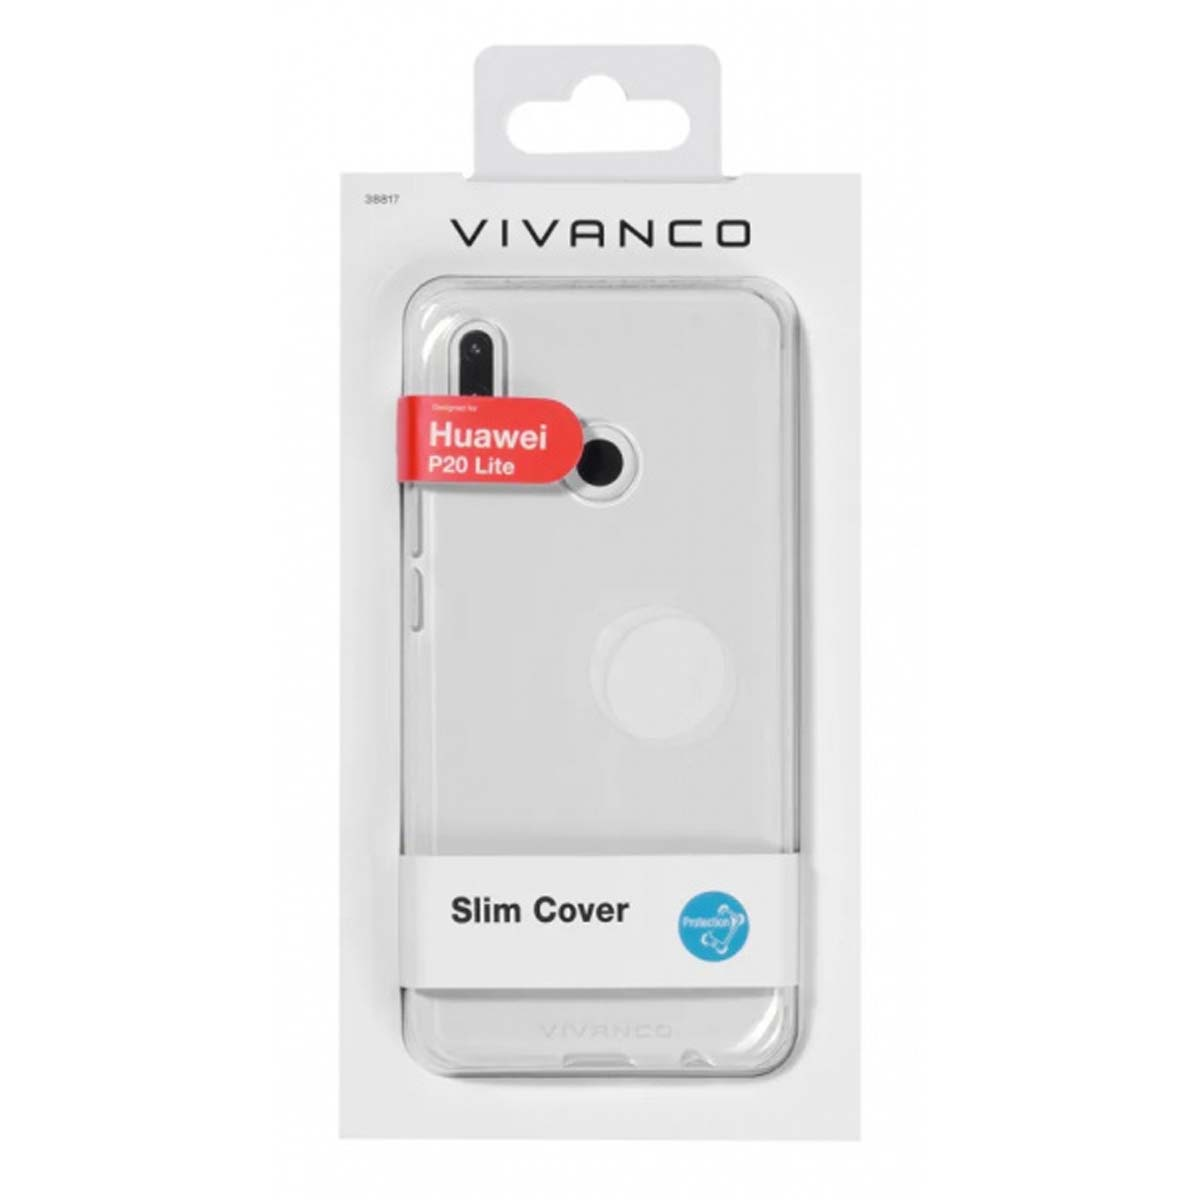 VIVANCO 38817, Backcover, Huawei, Lite, Transparent P20